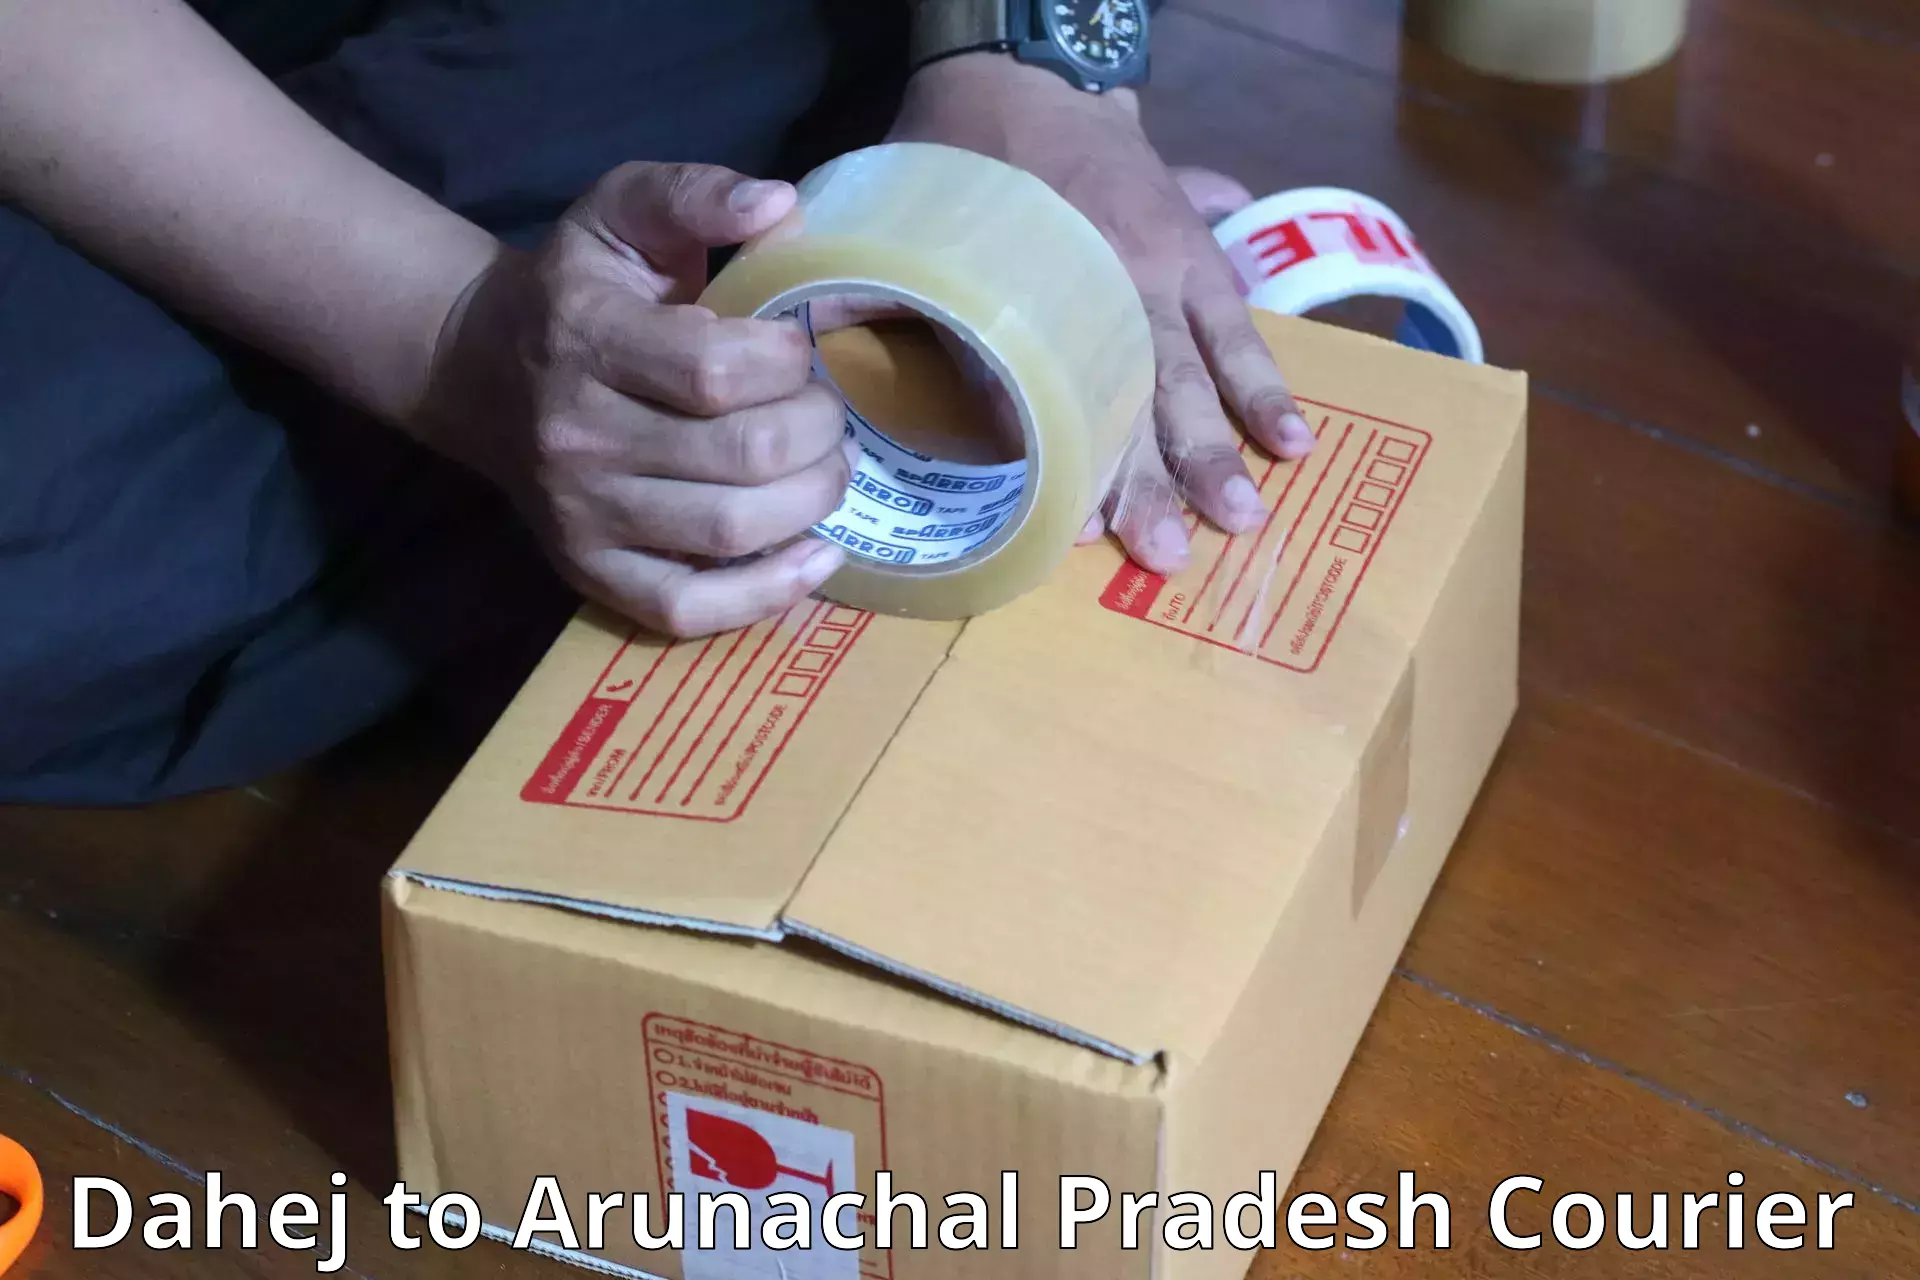 Luggage shipment specialists Dahej to Arunachal Pradesh